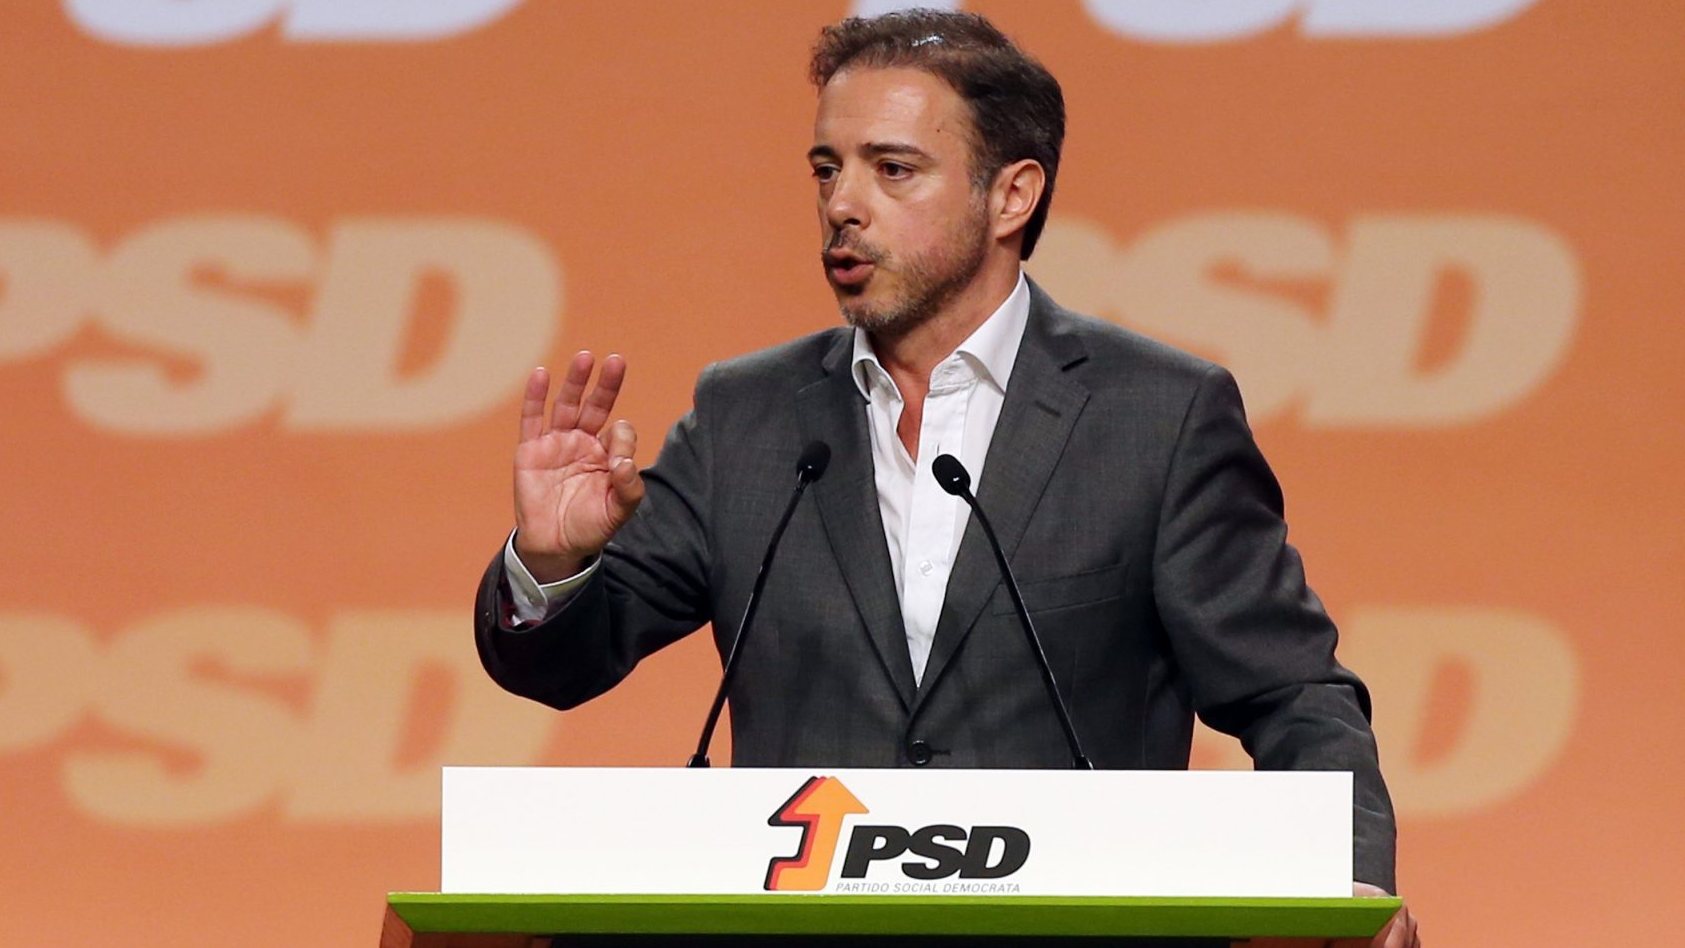 Governo/demissão: PSD já tem &quot;trabalho muito avançado&quot; sobre programa eleitoral, afirma Pedro Duarte